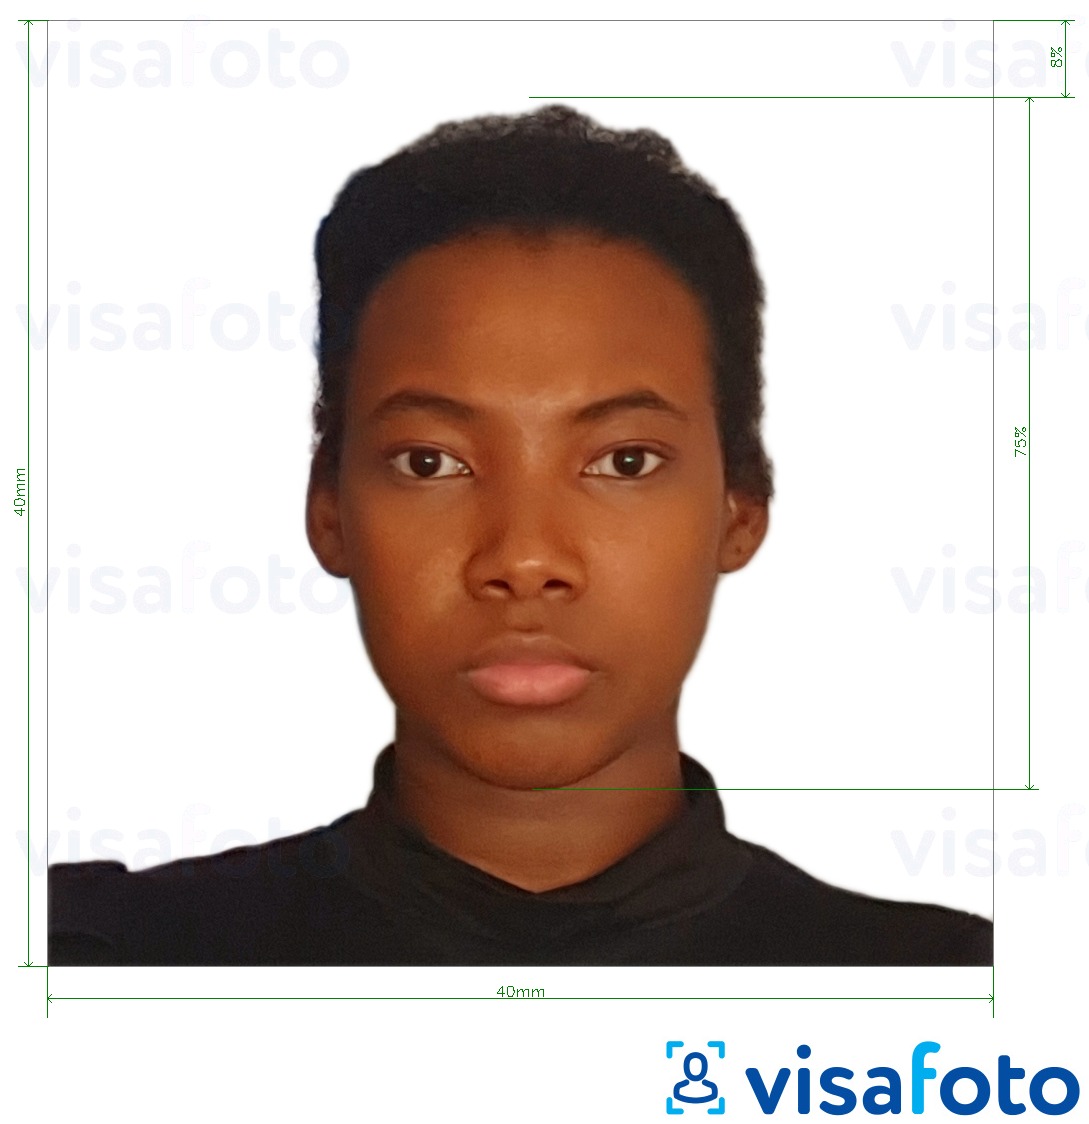 Voorbeeld van foto voor Visum Kameroen 4x4 cm (40x40 mm) met exacte maatspecificatie